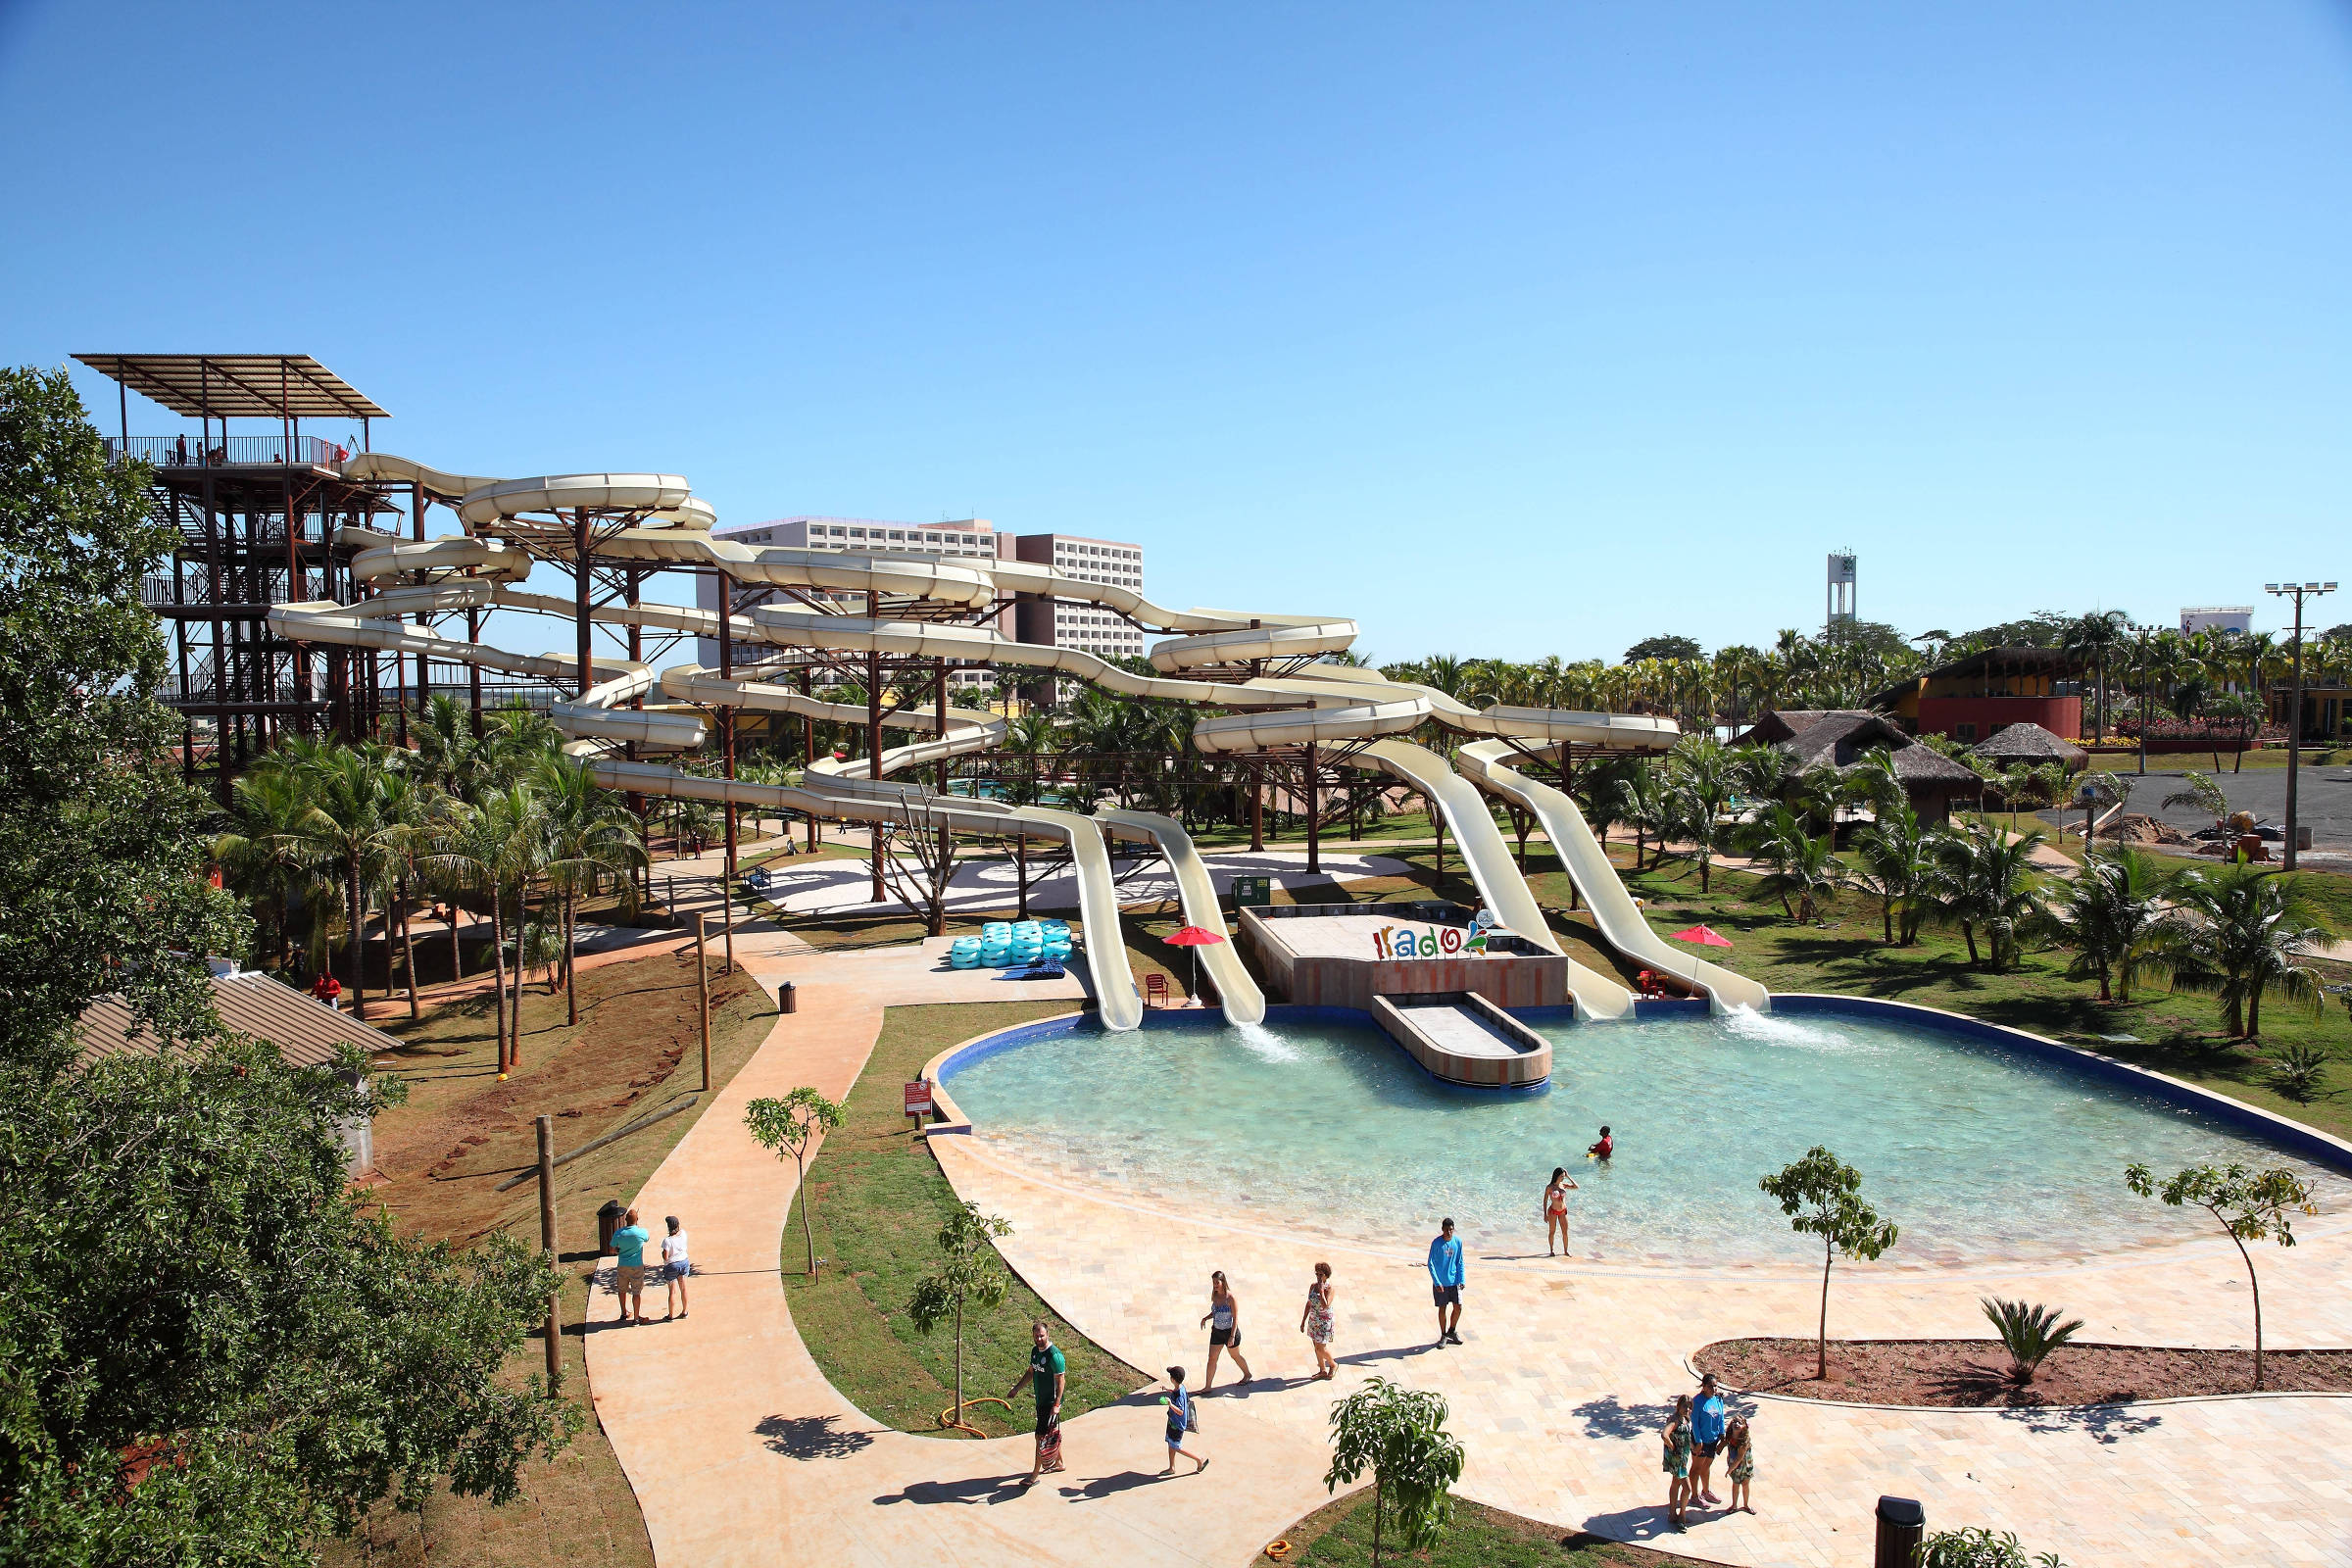 Hot Beach Resort Olímpia – Resort e Parque Aquático